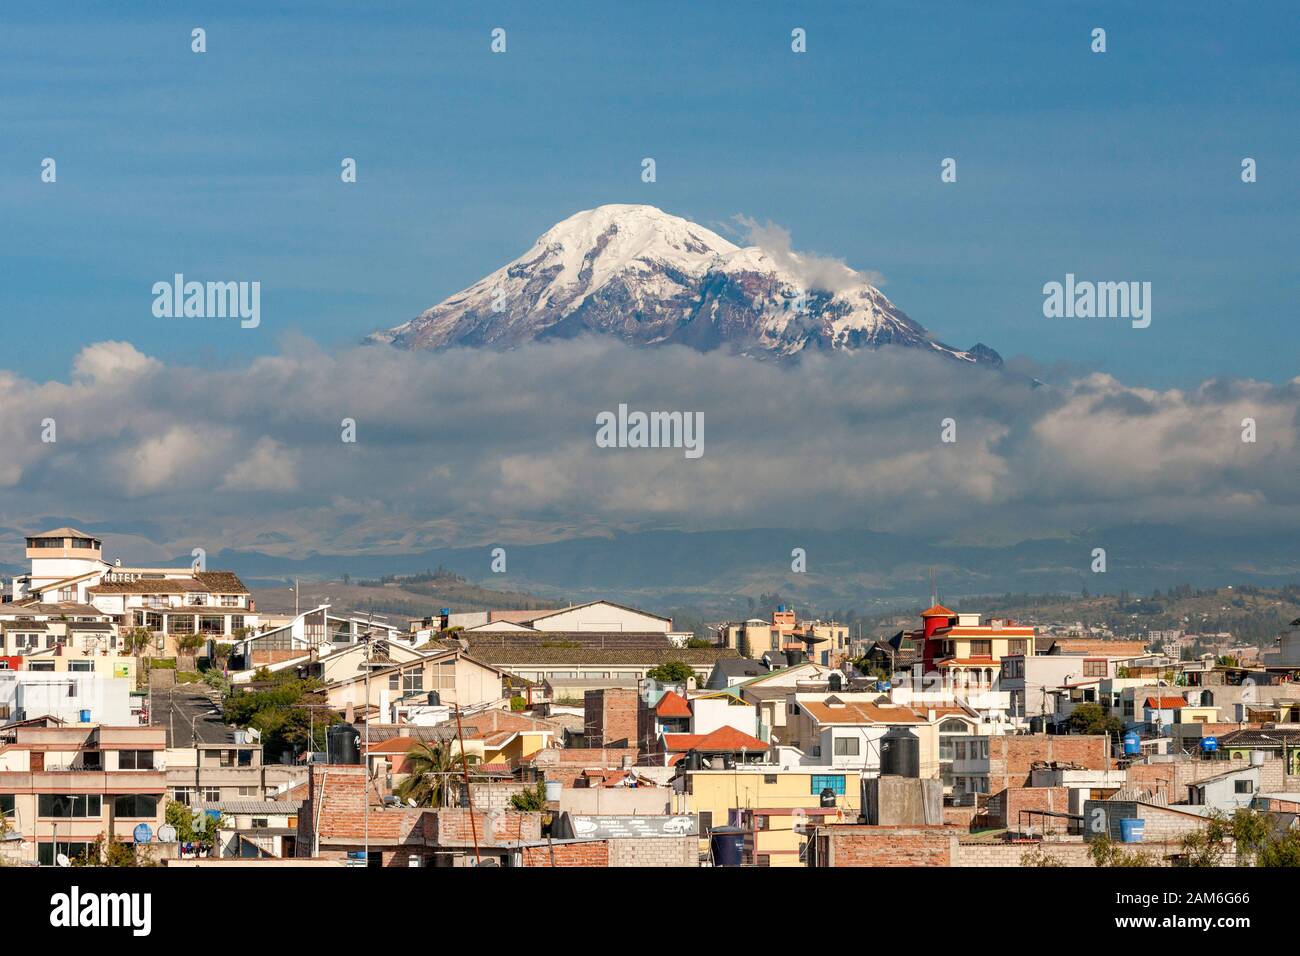 Mont Chimborazo volcan (6268 m) vu à travers les toits de la ville de Riobamba. Banque D'Images